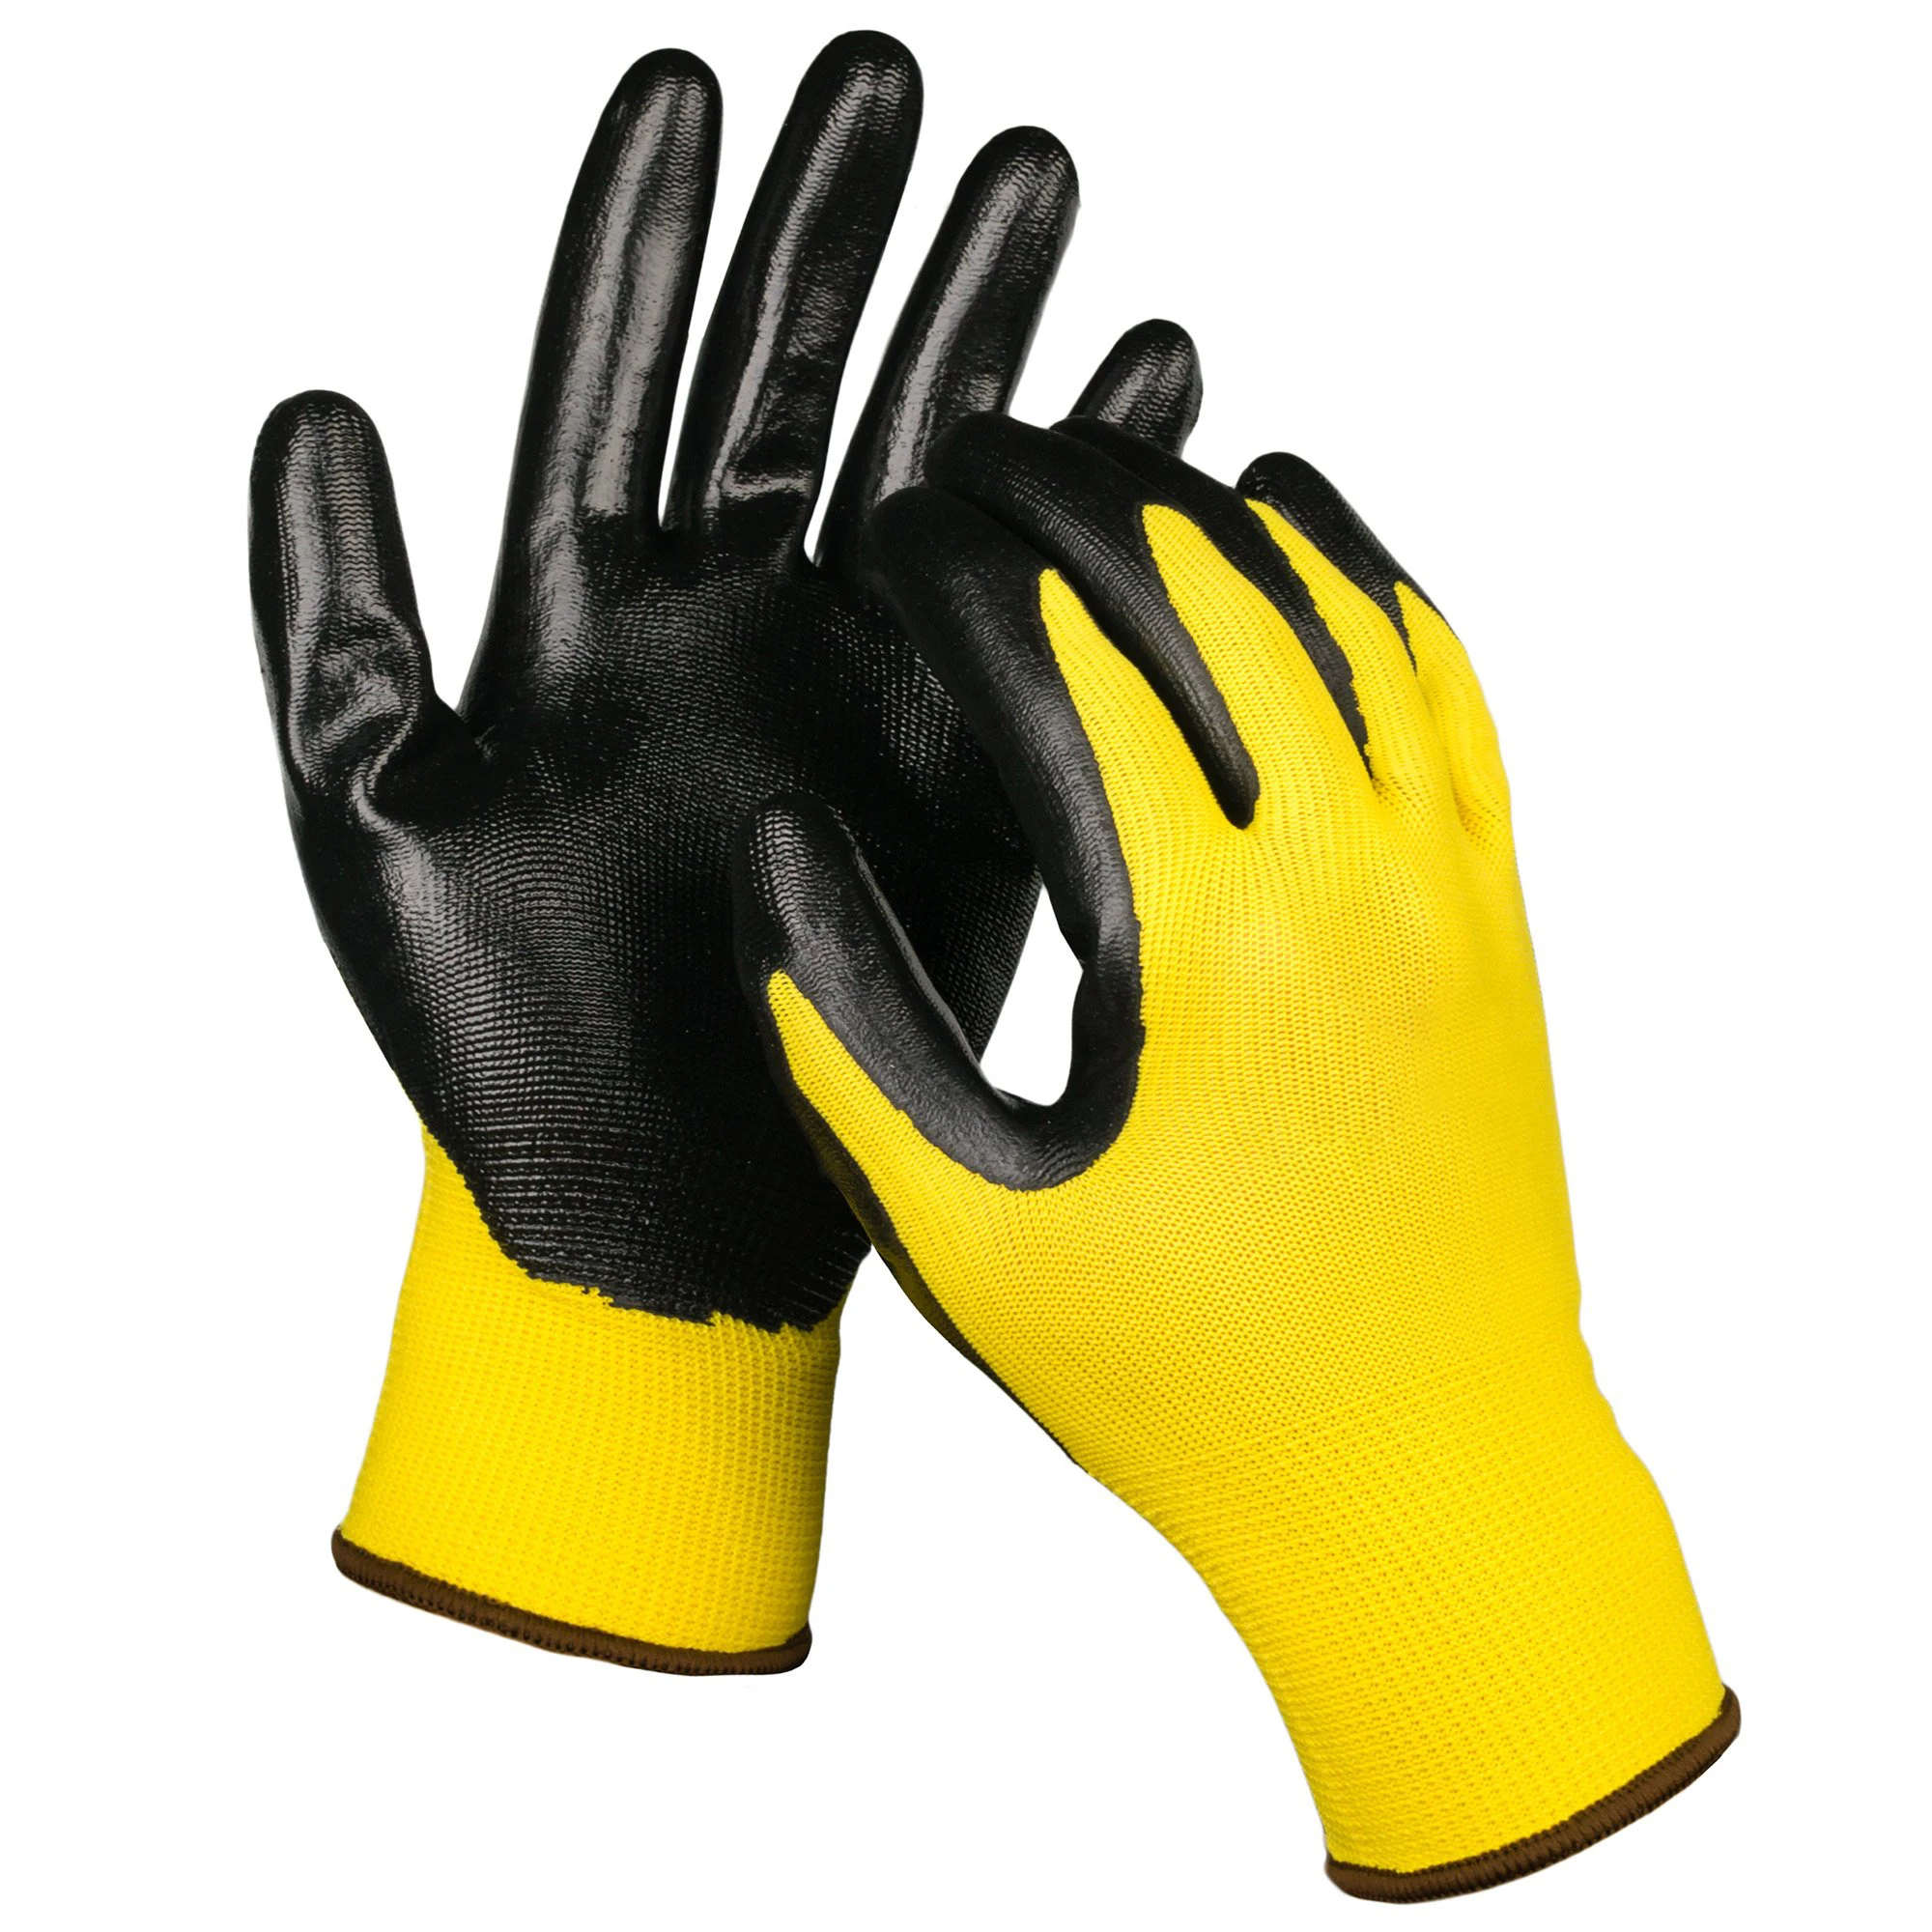 Перчатки 12 лет. Safety Nitril Gloves. Перчатки восточные тигры g160 с полосами из нитрила.